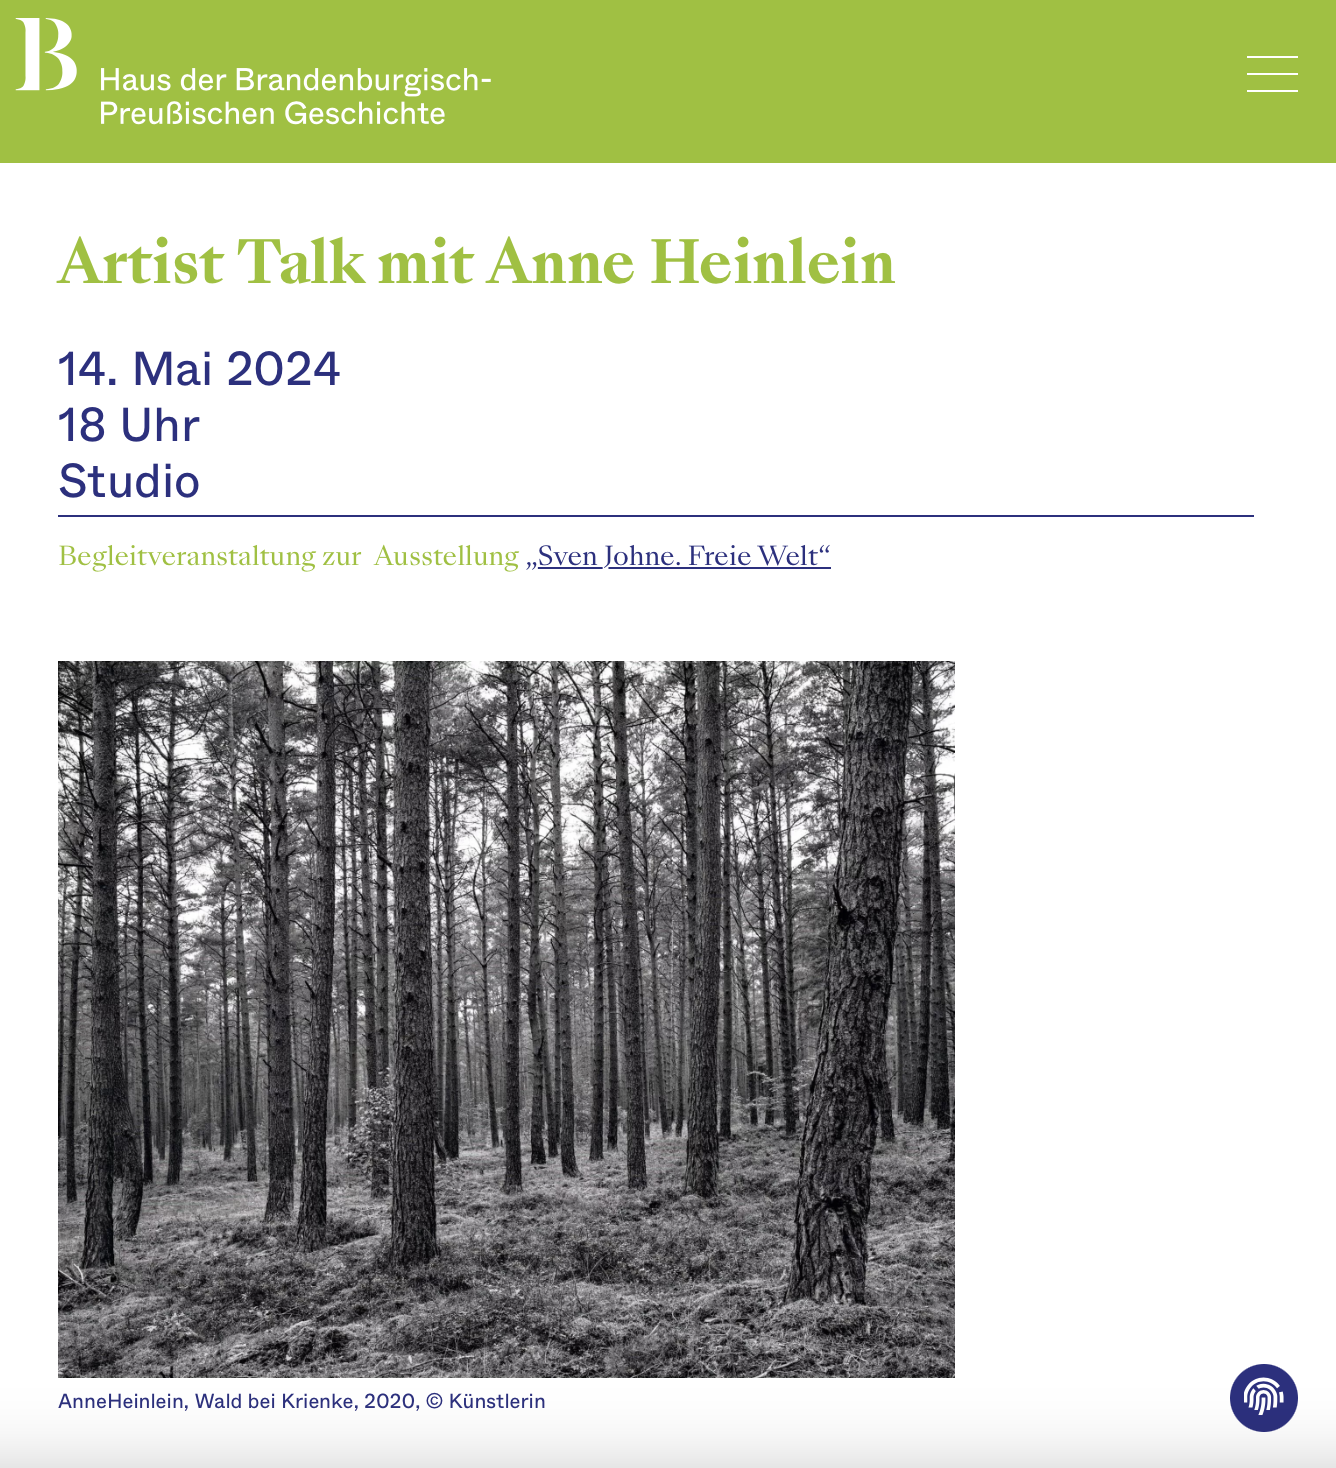 Artist Talk mit Anne Heinlein im HBPG